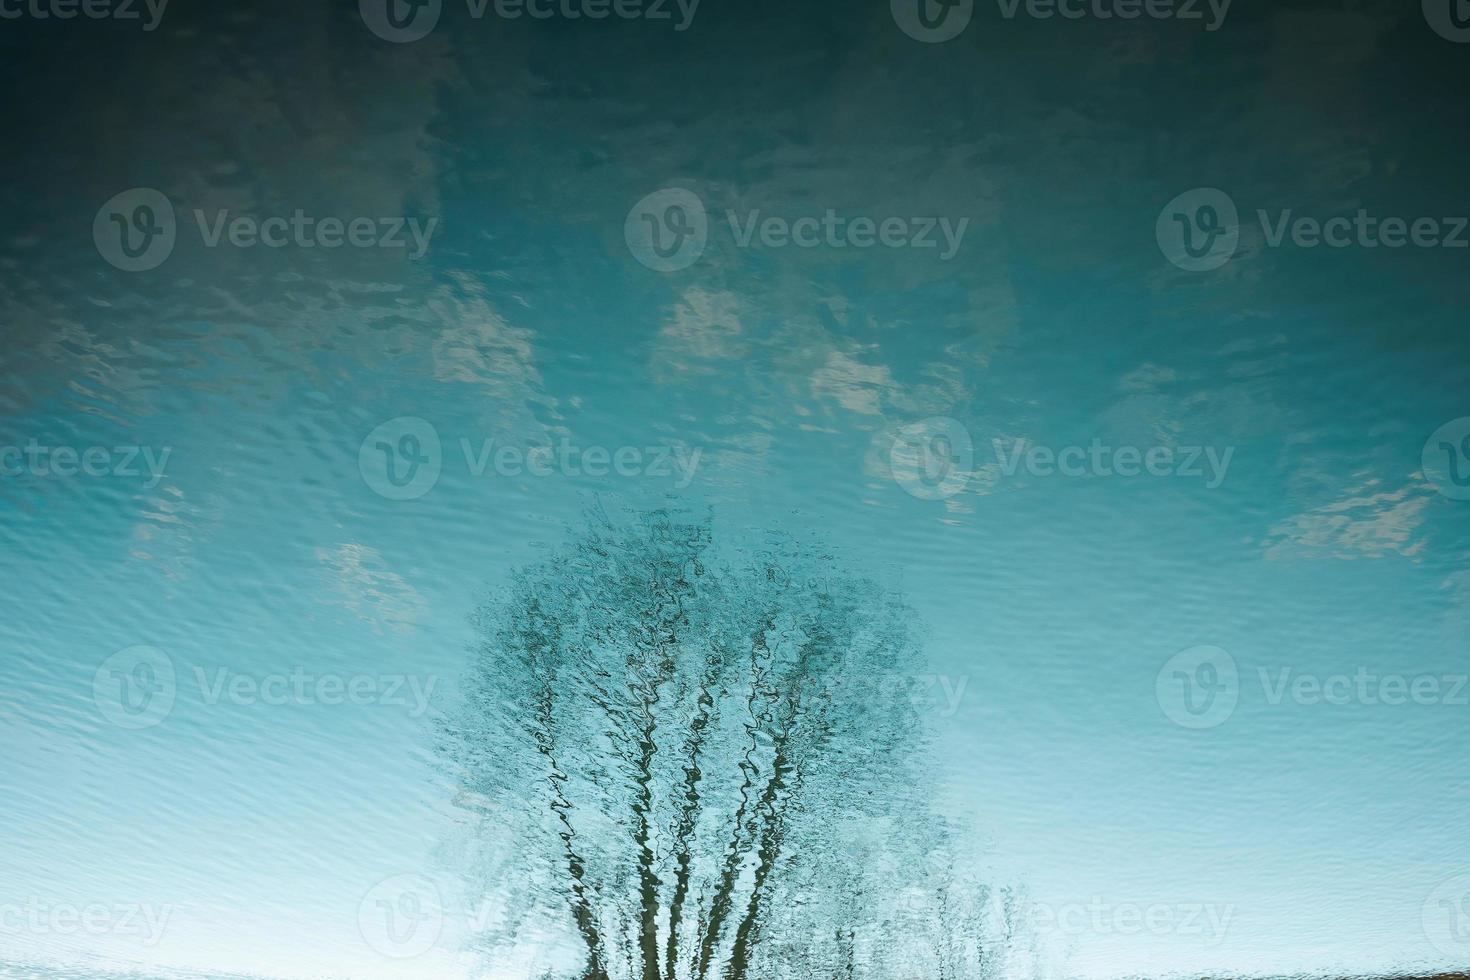 árbol y cielo reflexión en agua foto